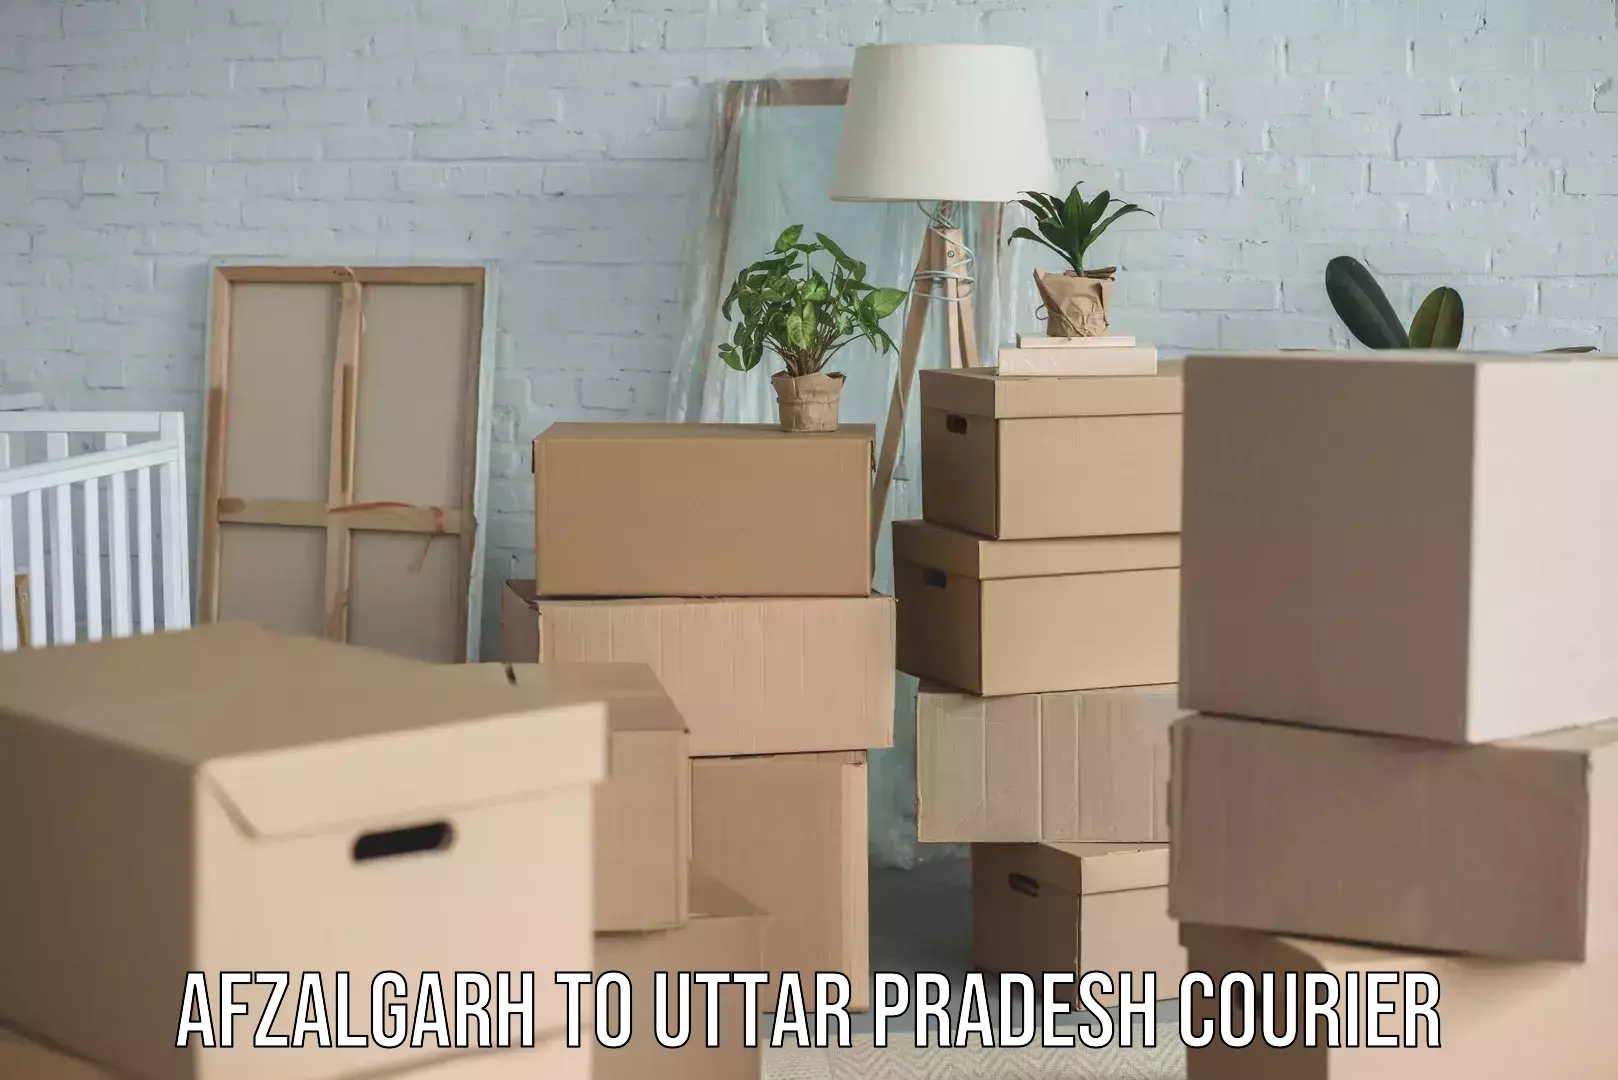 Online courier booking Afzalgarh to Uttar Pradesh